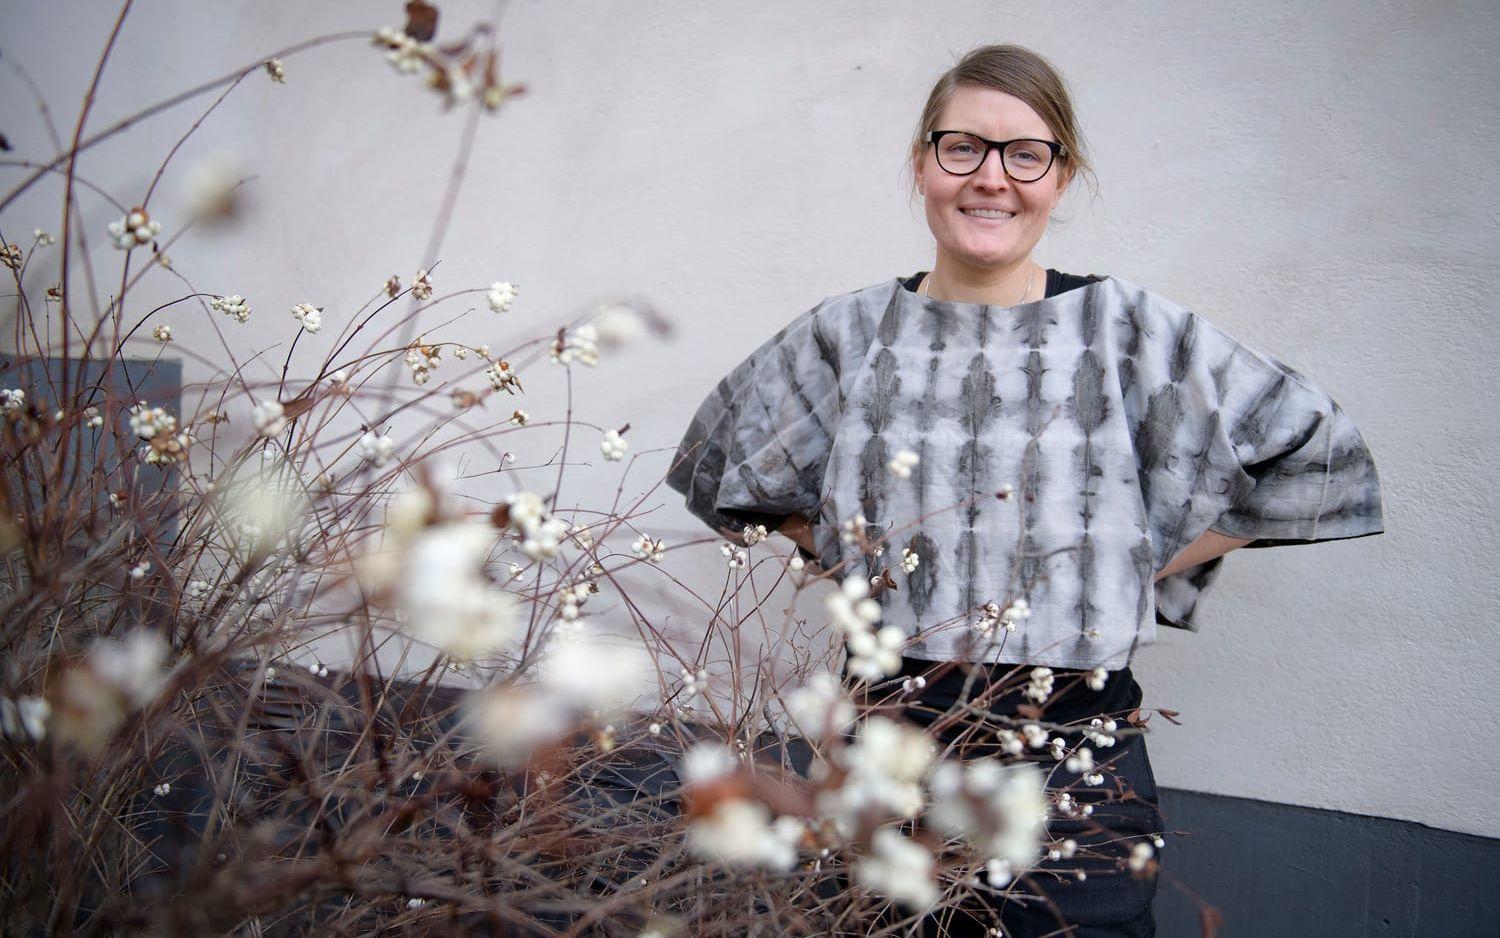 Textilkonstnären Lina Sofia Lundin är expert på hur man växtfärgar tyger och garner. Hon har på sig en sidentröja som har fått sin färg från granatäpple och järn. Foto: Jessica Gow/TT